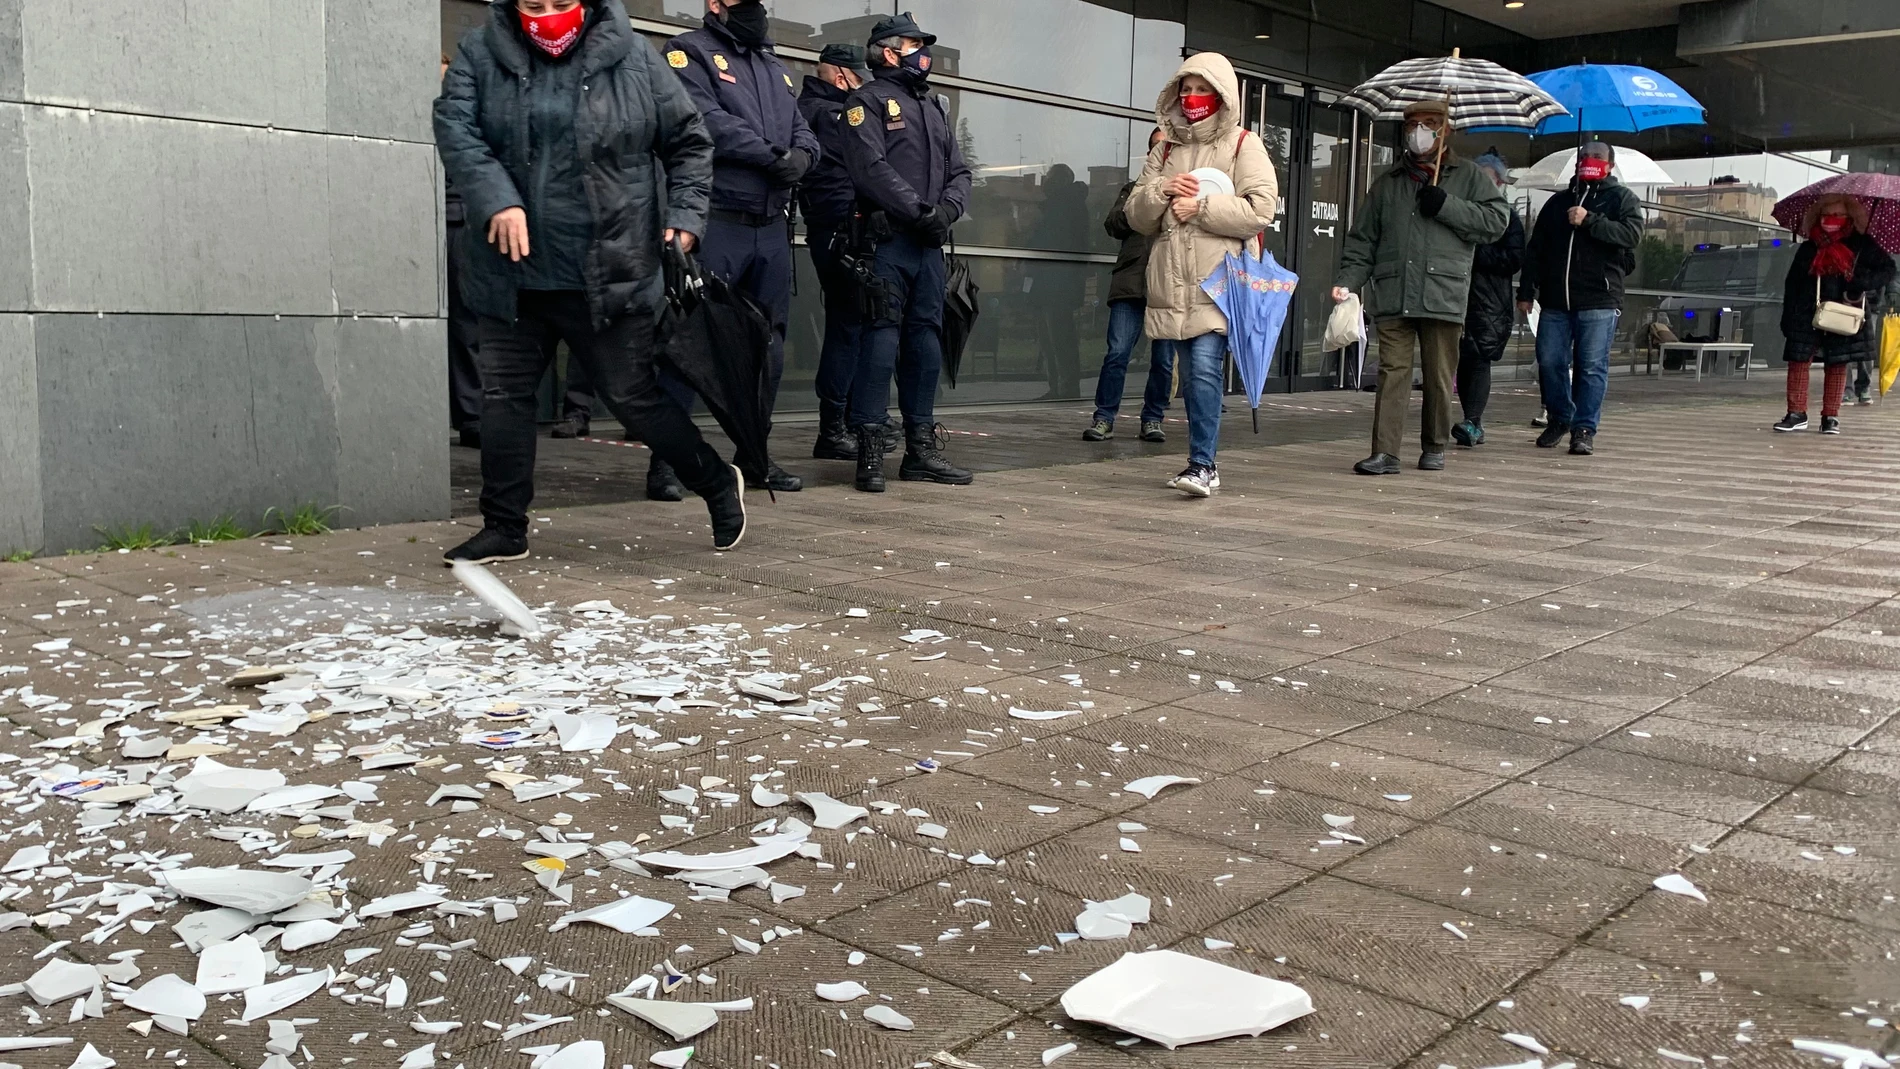 Hosteleros rompen platos ante la sede de la Delegación de Hacienda en Valladolid